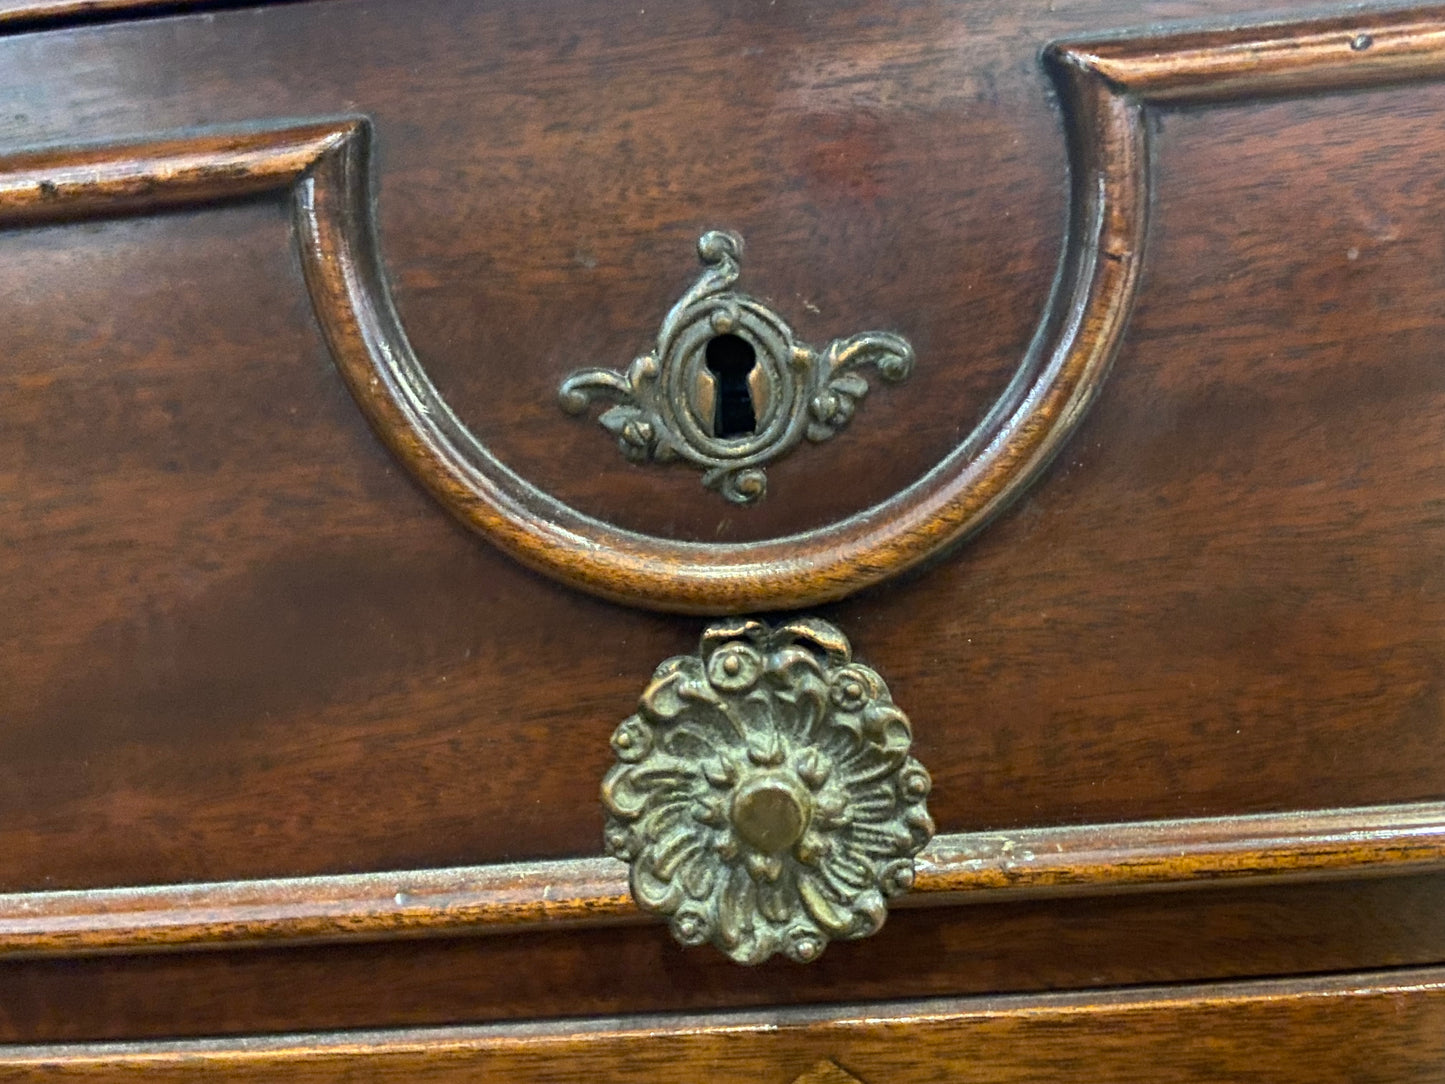 Antique Dresser with Mirror (24527)